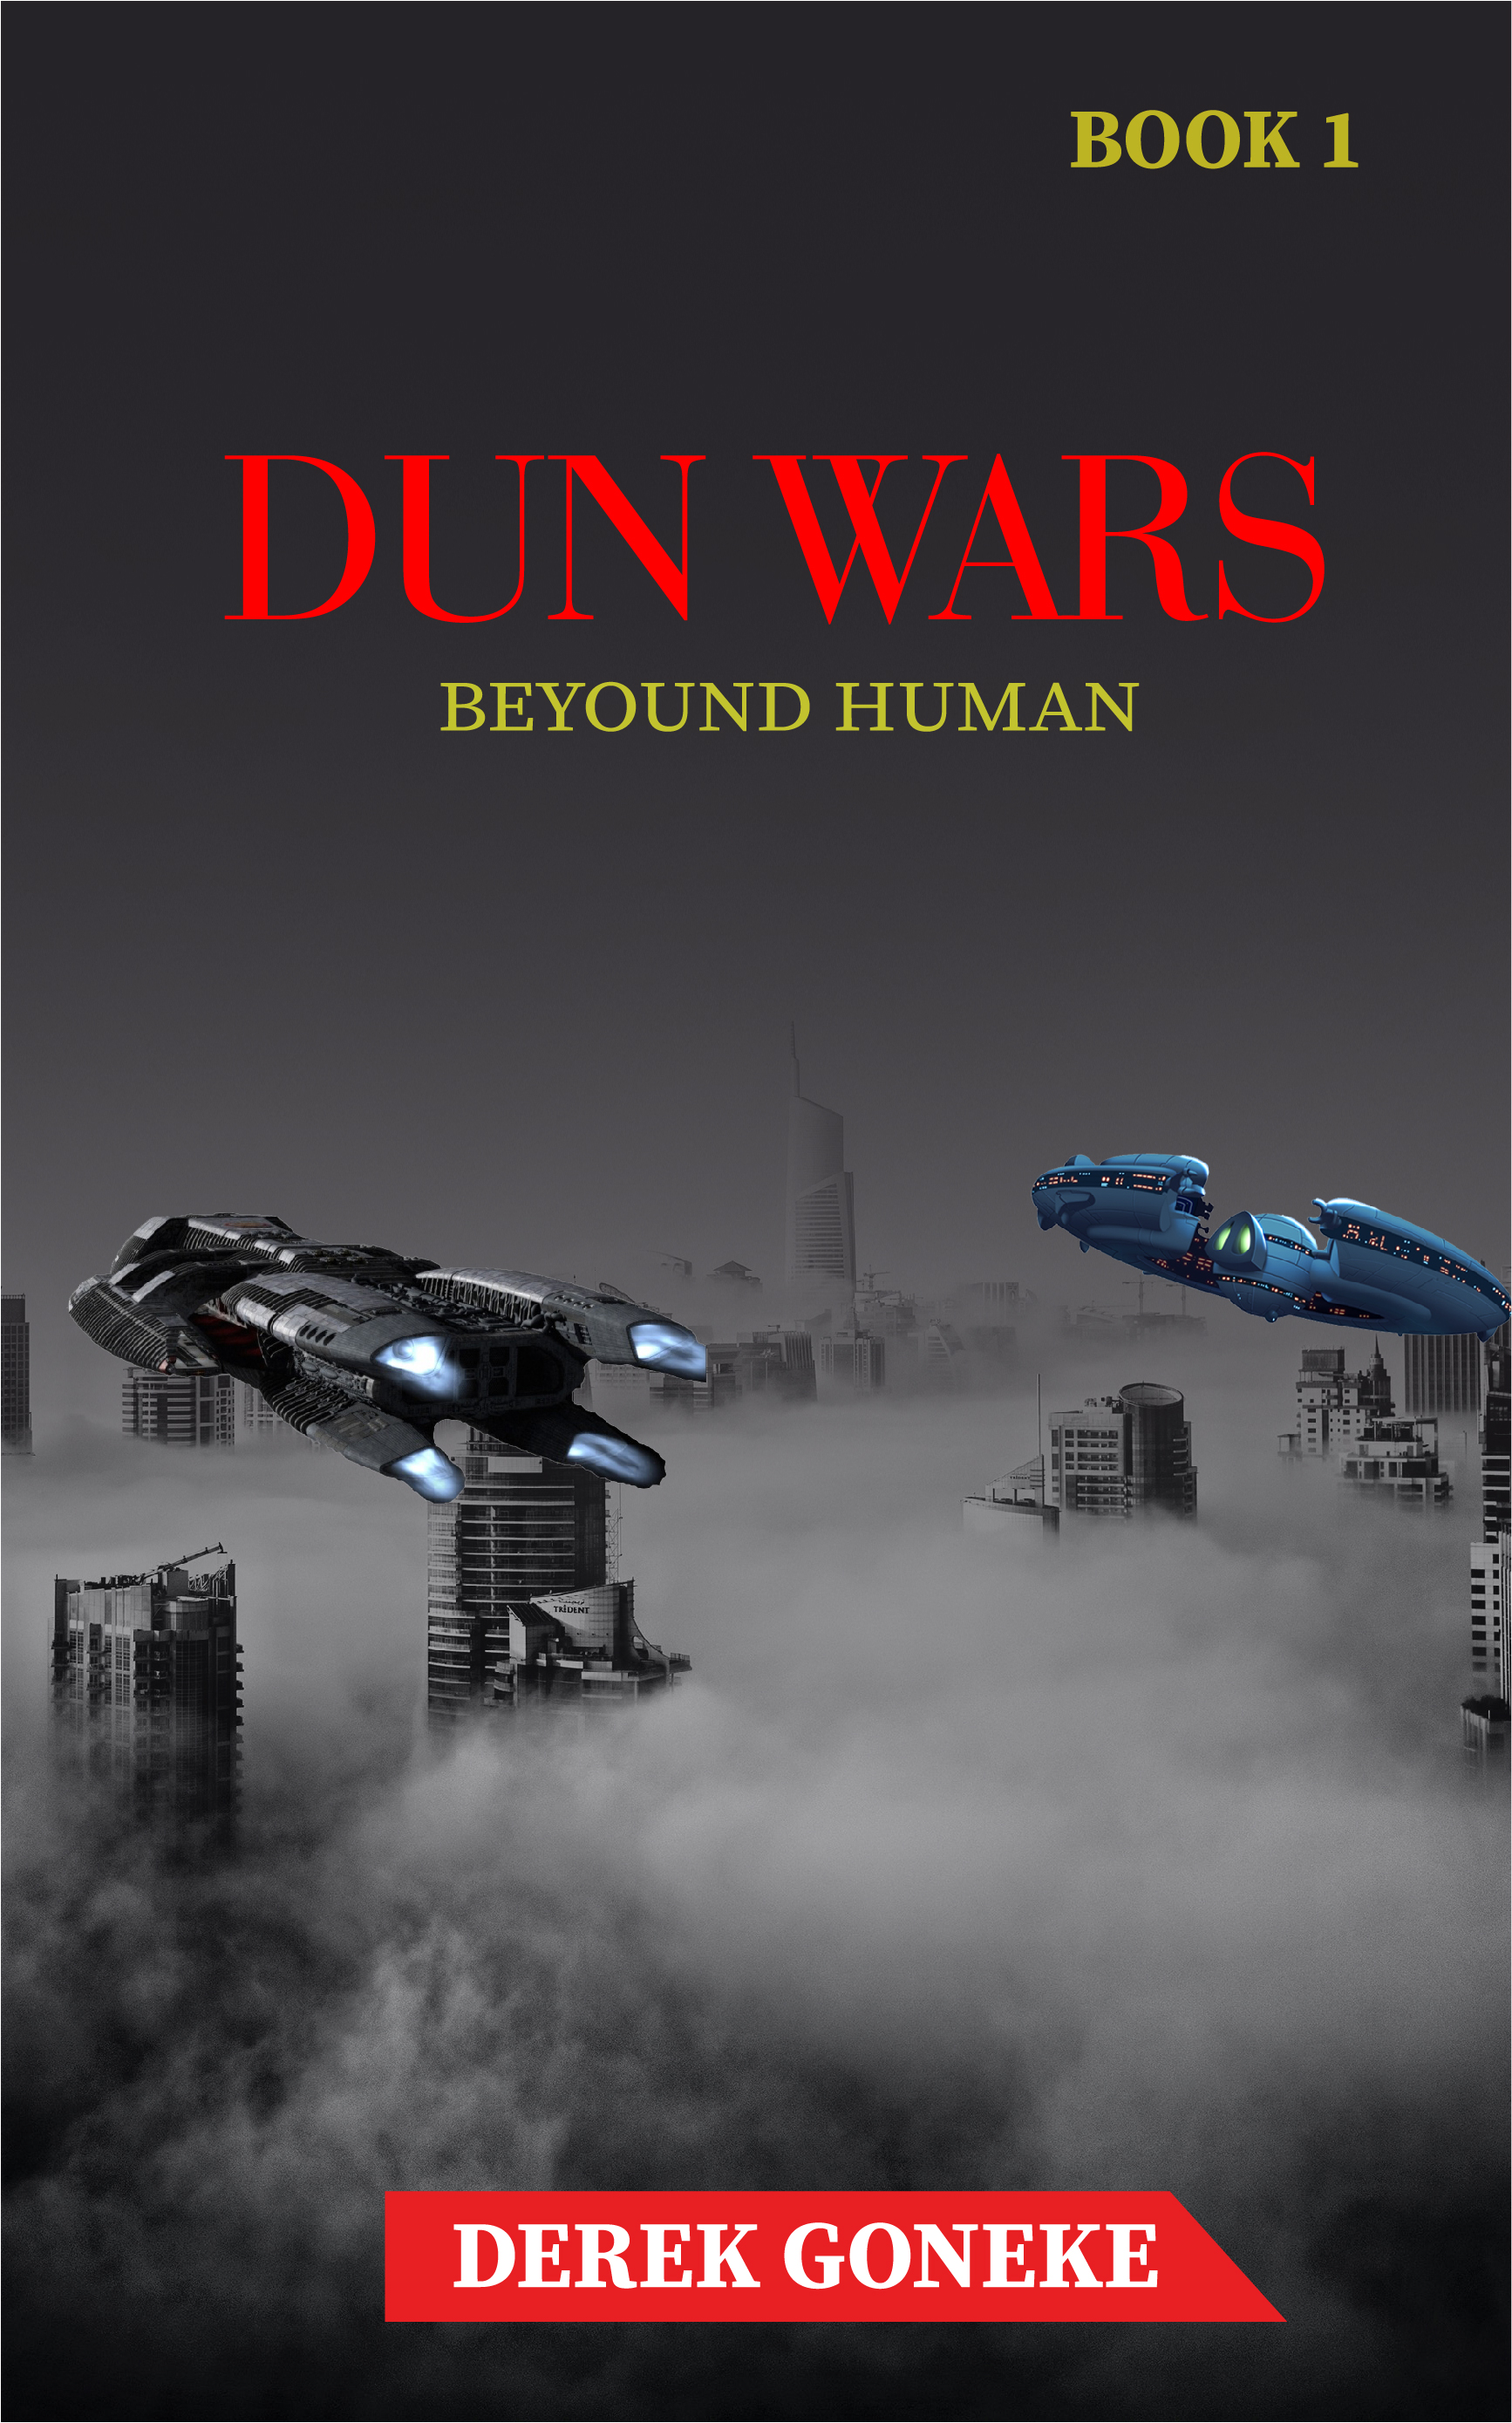 Derek Goneke Set To Launch The Dun Wars Series On Amazon